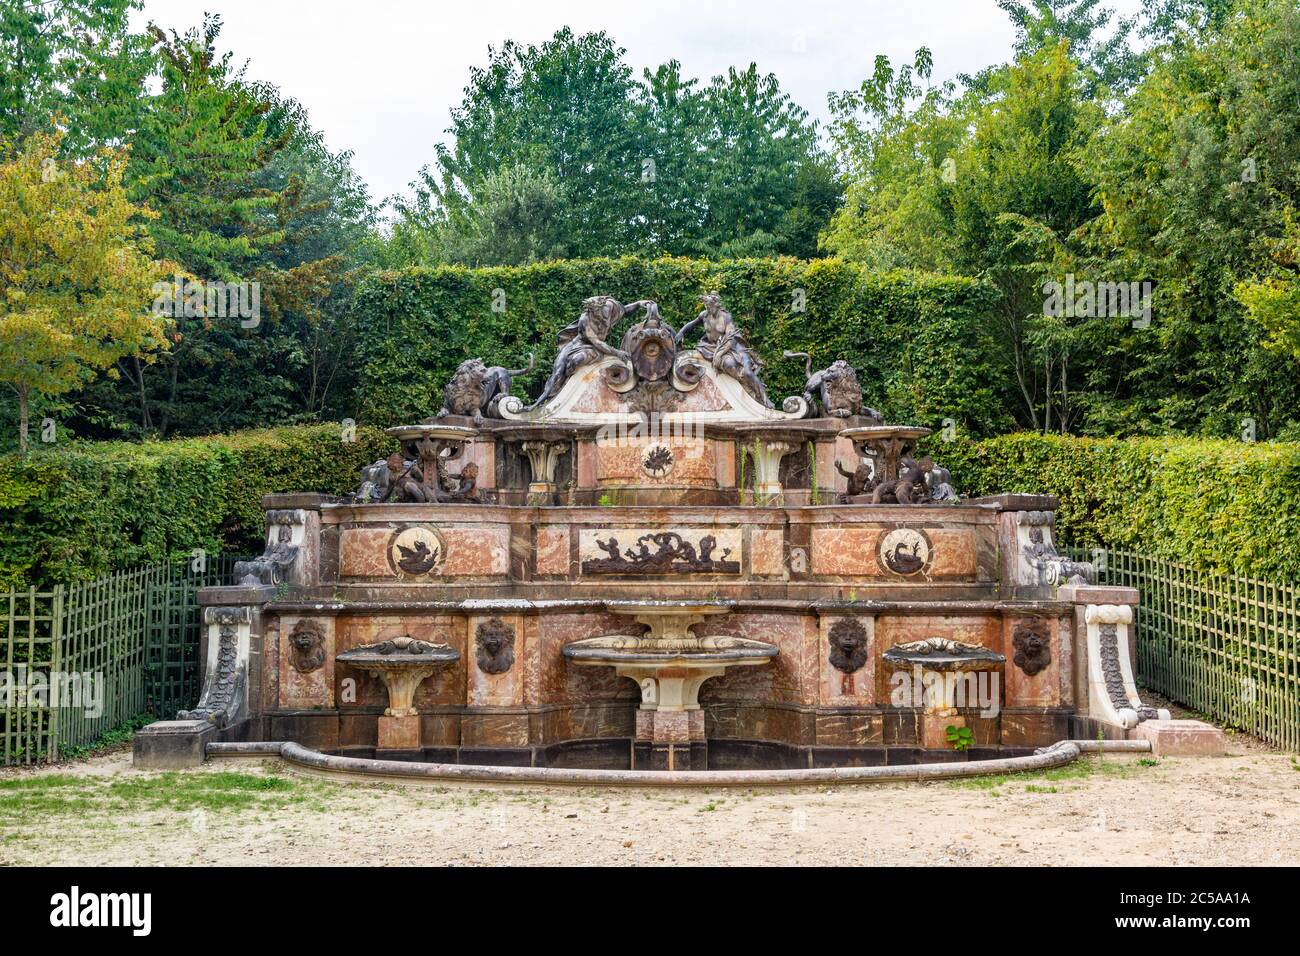 Versailles, Francia - 27 agosto 2019 : Grand Trianon Fountain chiamato Water buffet. Il Grand Trianon fu la residenza della regina Maria Antonietta. Foto Stock